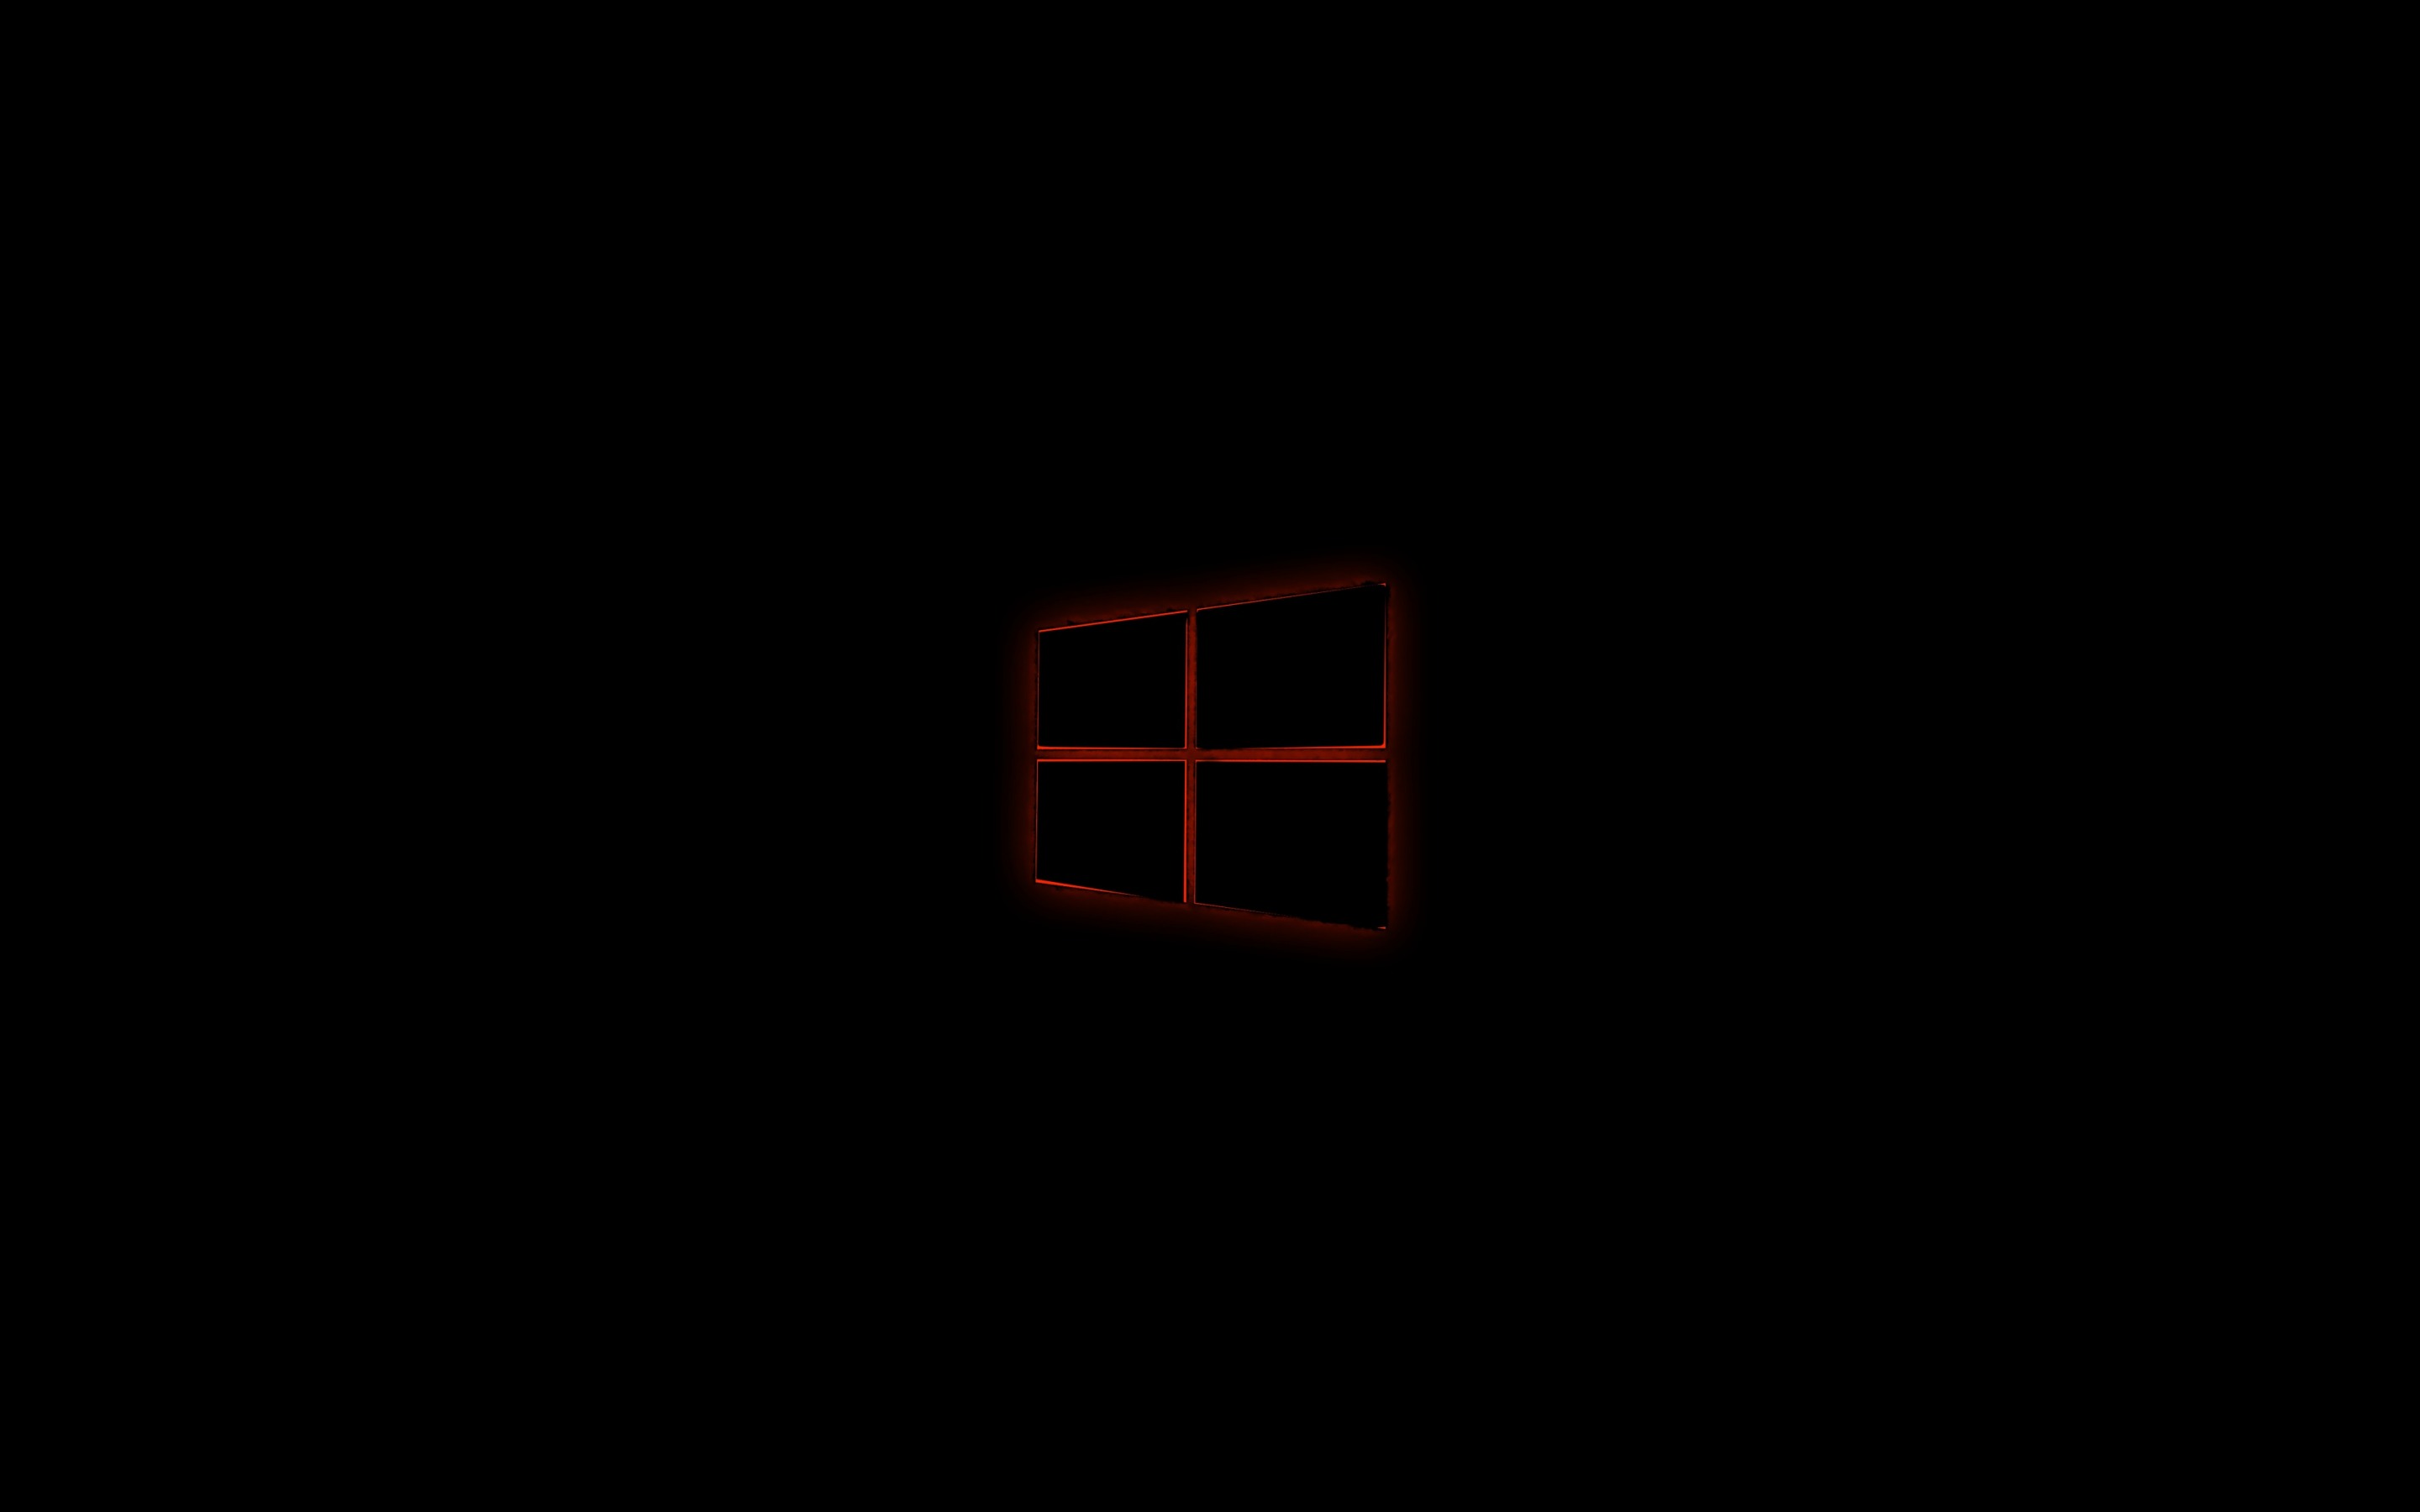 Với hình nền Windows 10 đen và logo màu cam cực kỳ sáng tạo, bạn có thể tạo ra một giao diện hoàn toàn mới cho máy tính của mình. Điểm nhấn màu cam sẽ giúp giao diện của bạn nổi bật hơn và thu hút sự chú ý của những người xung quanh.